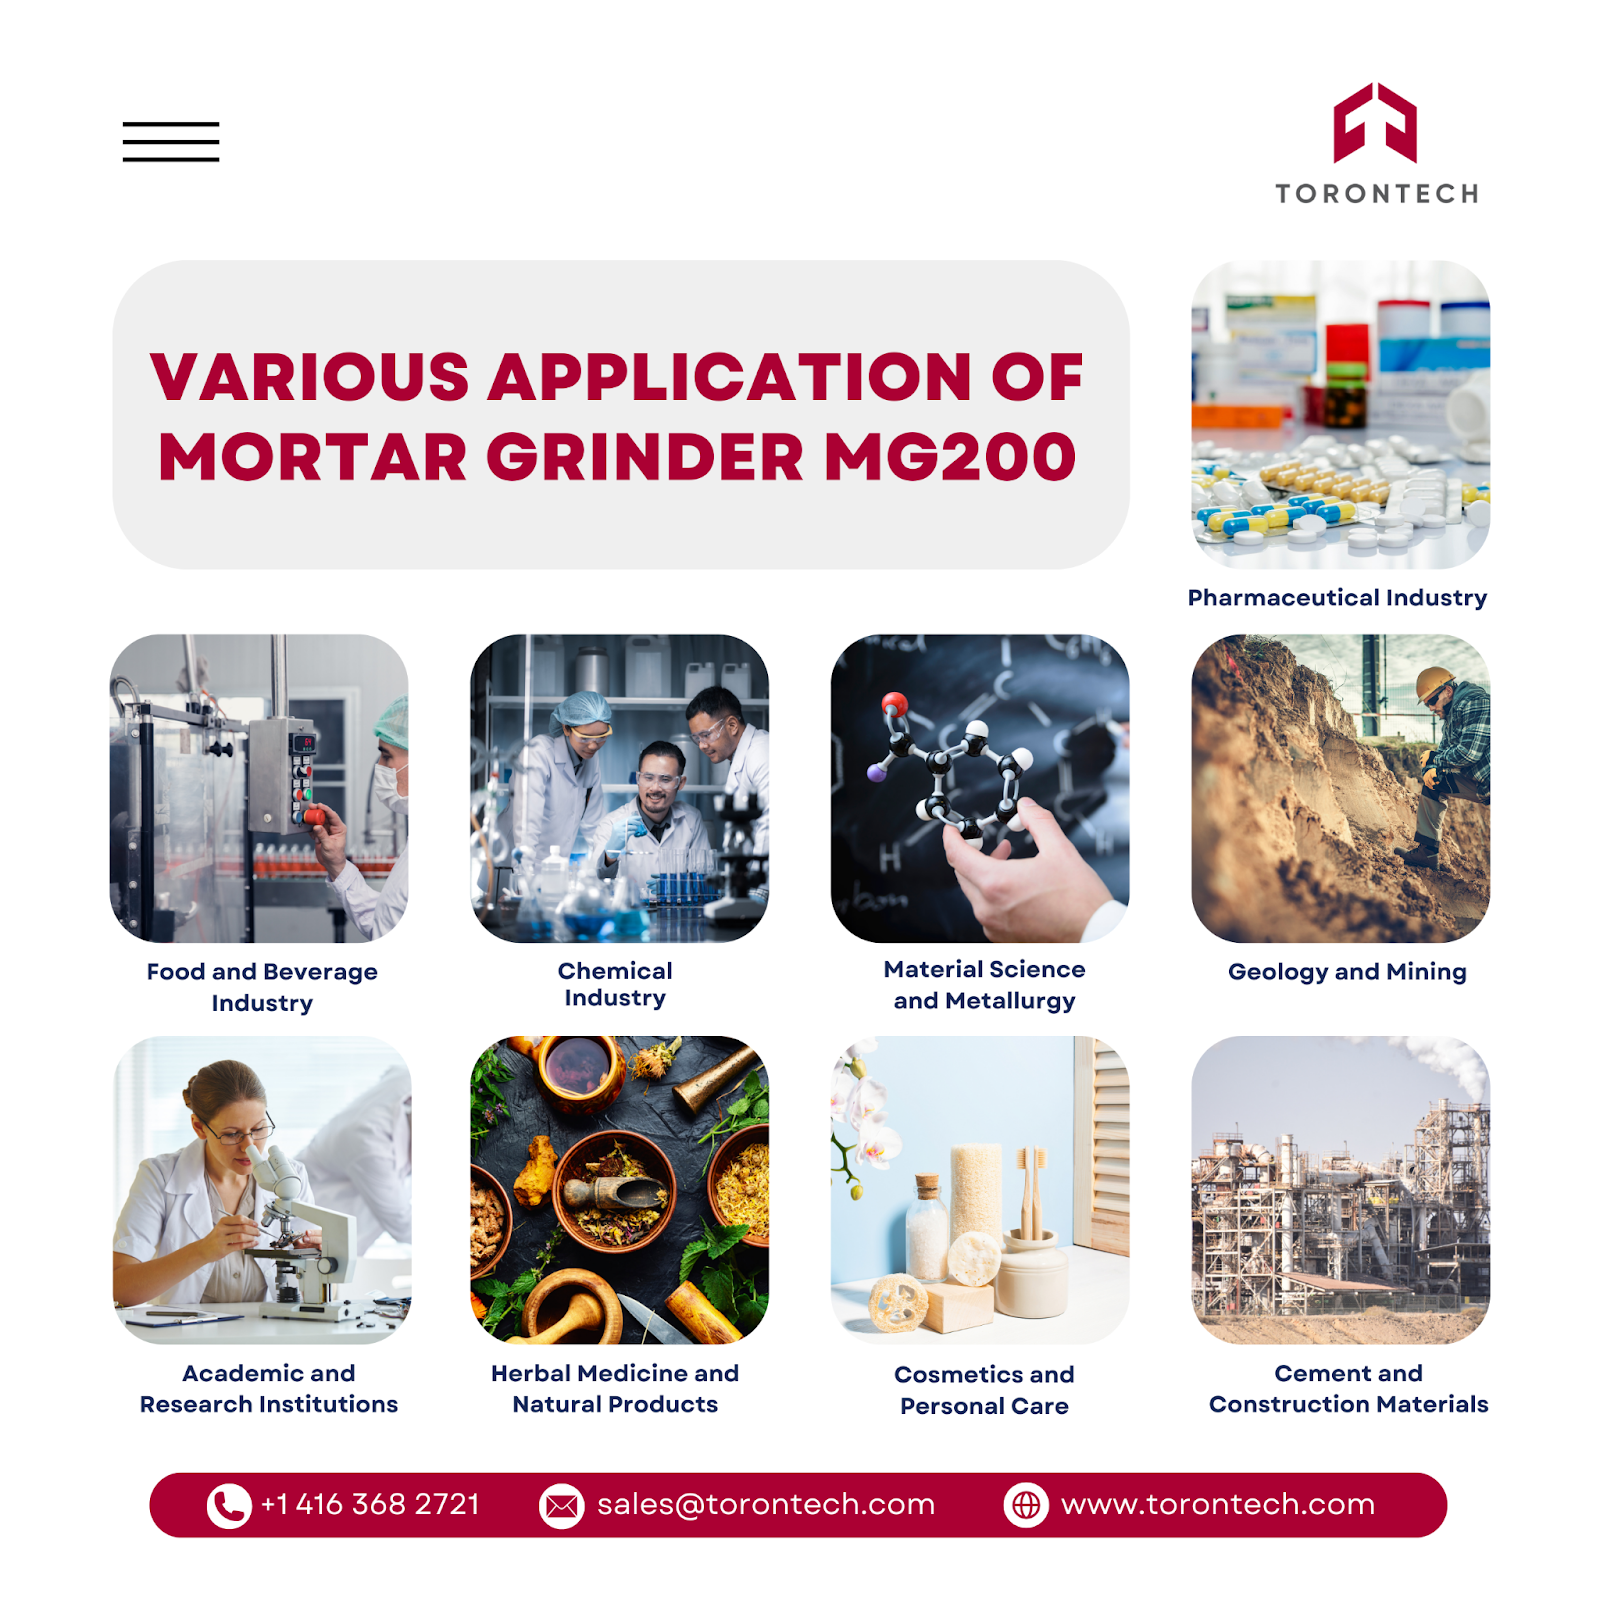 Application of Mortar Grinder: Versatile in Various Industries